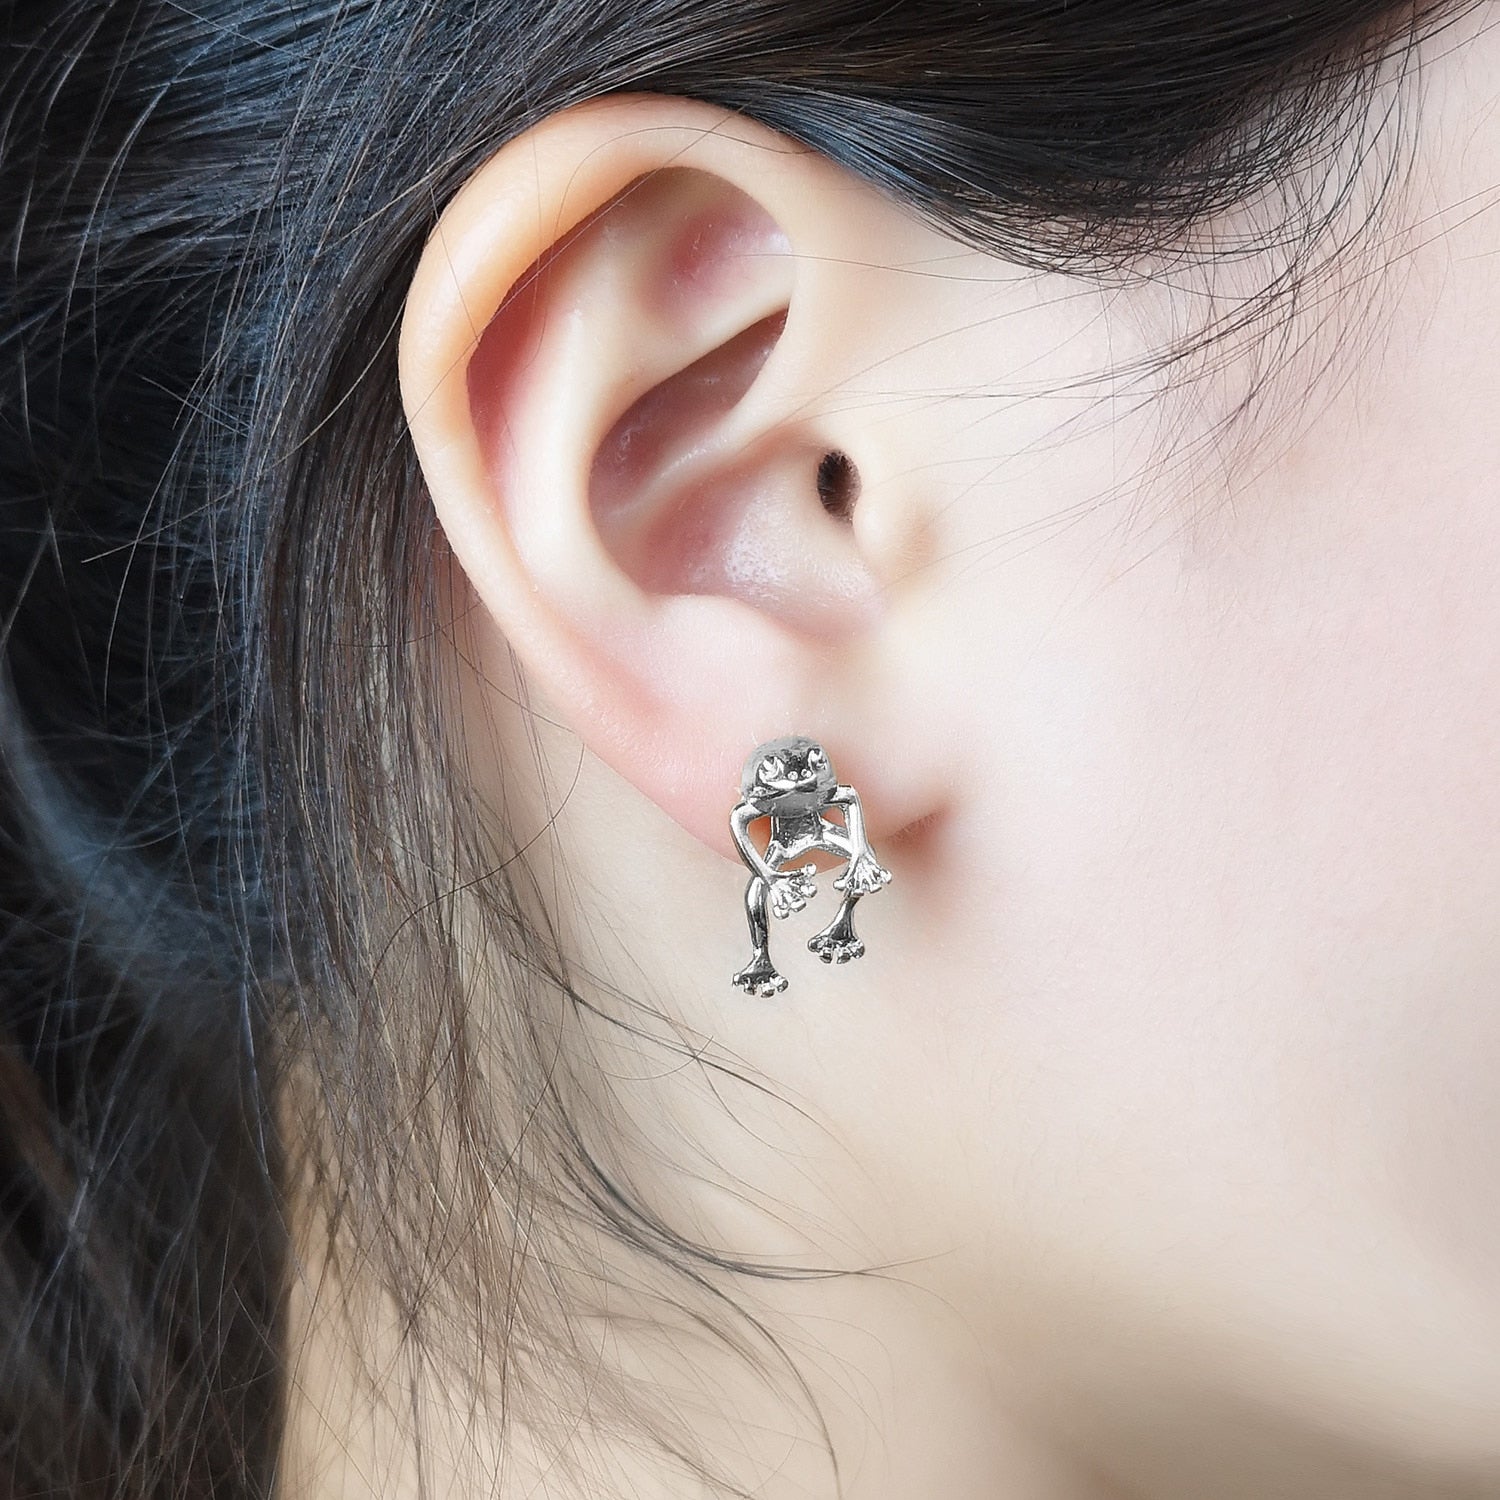 Gothic Sword Earrings for Women Vintage Cool Punk Crystal Ear Jacket Dagger  Pierced Stud Earrings Jewelry Gift Earring wholesale - AliExpress